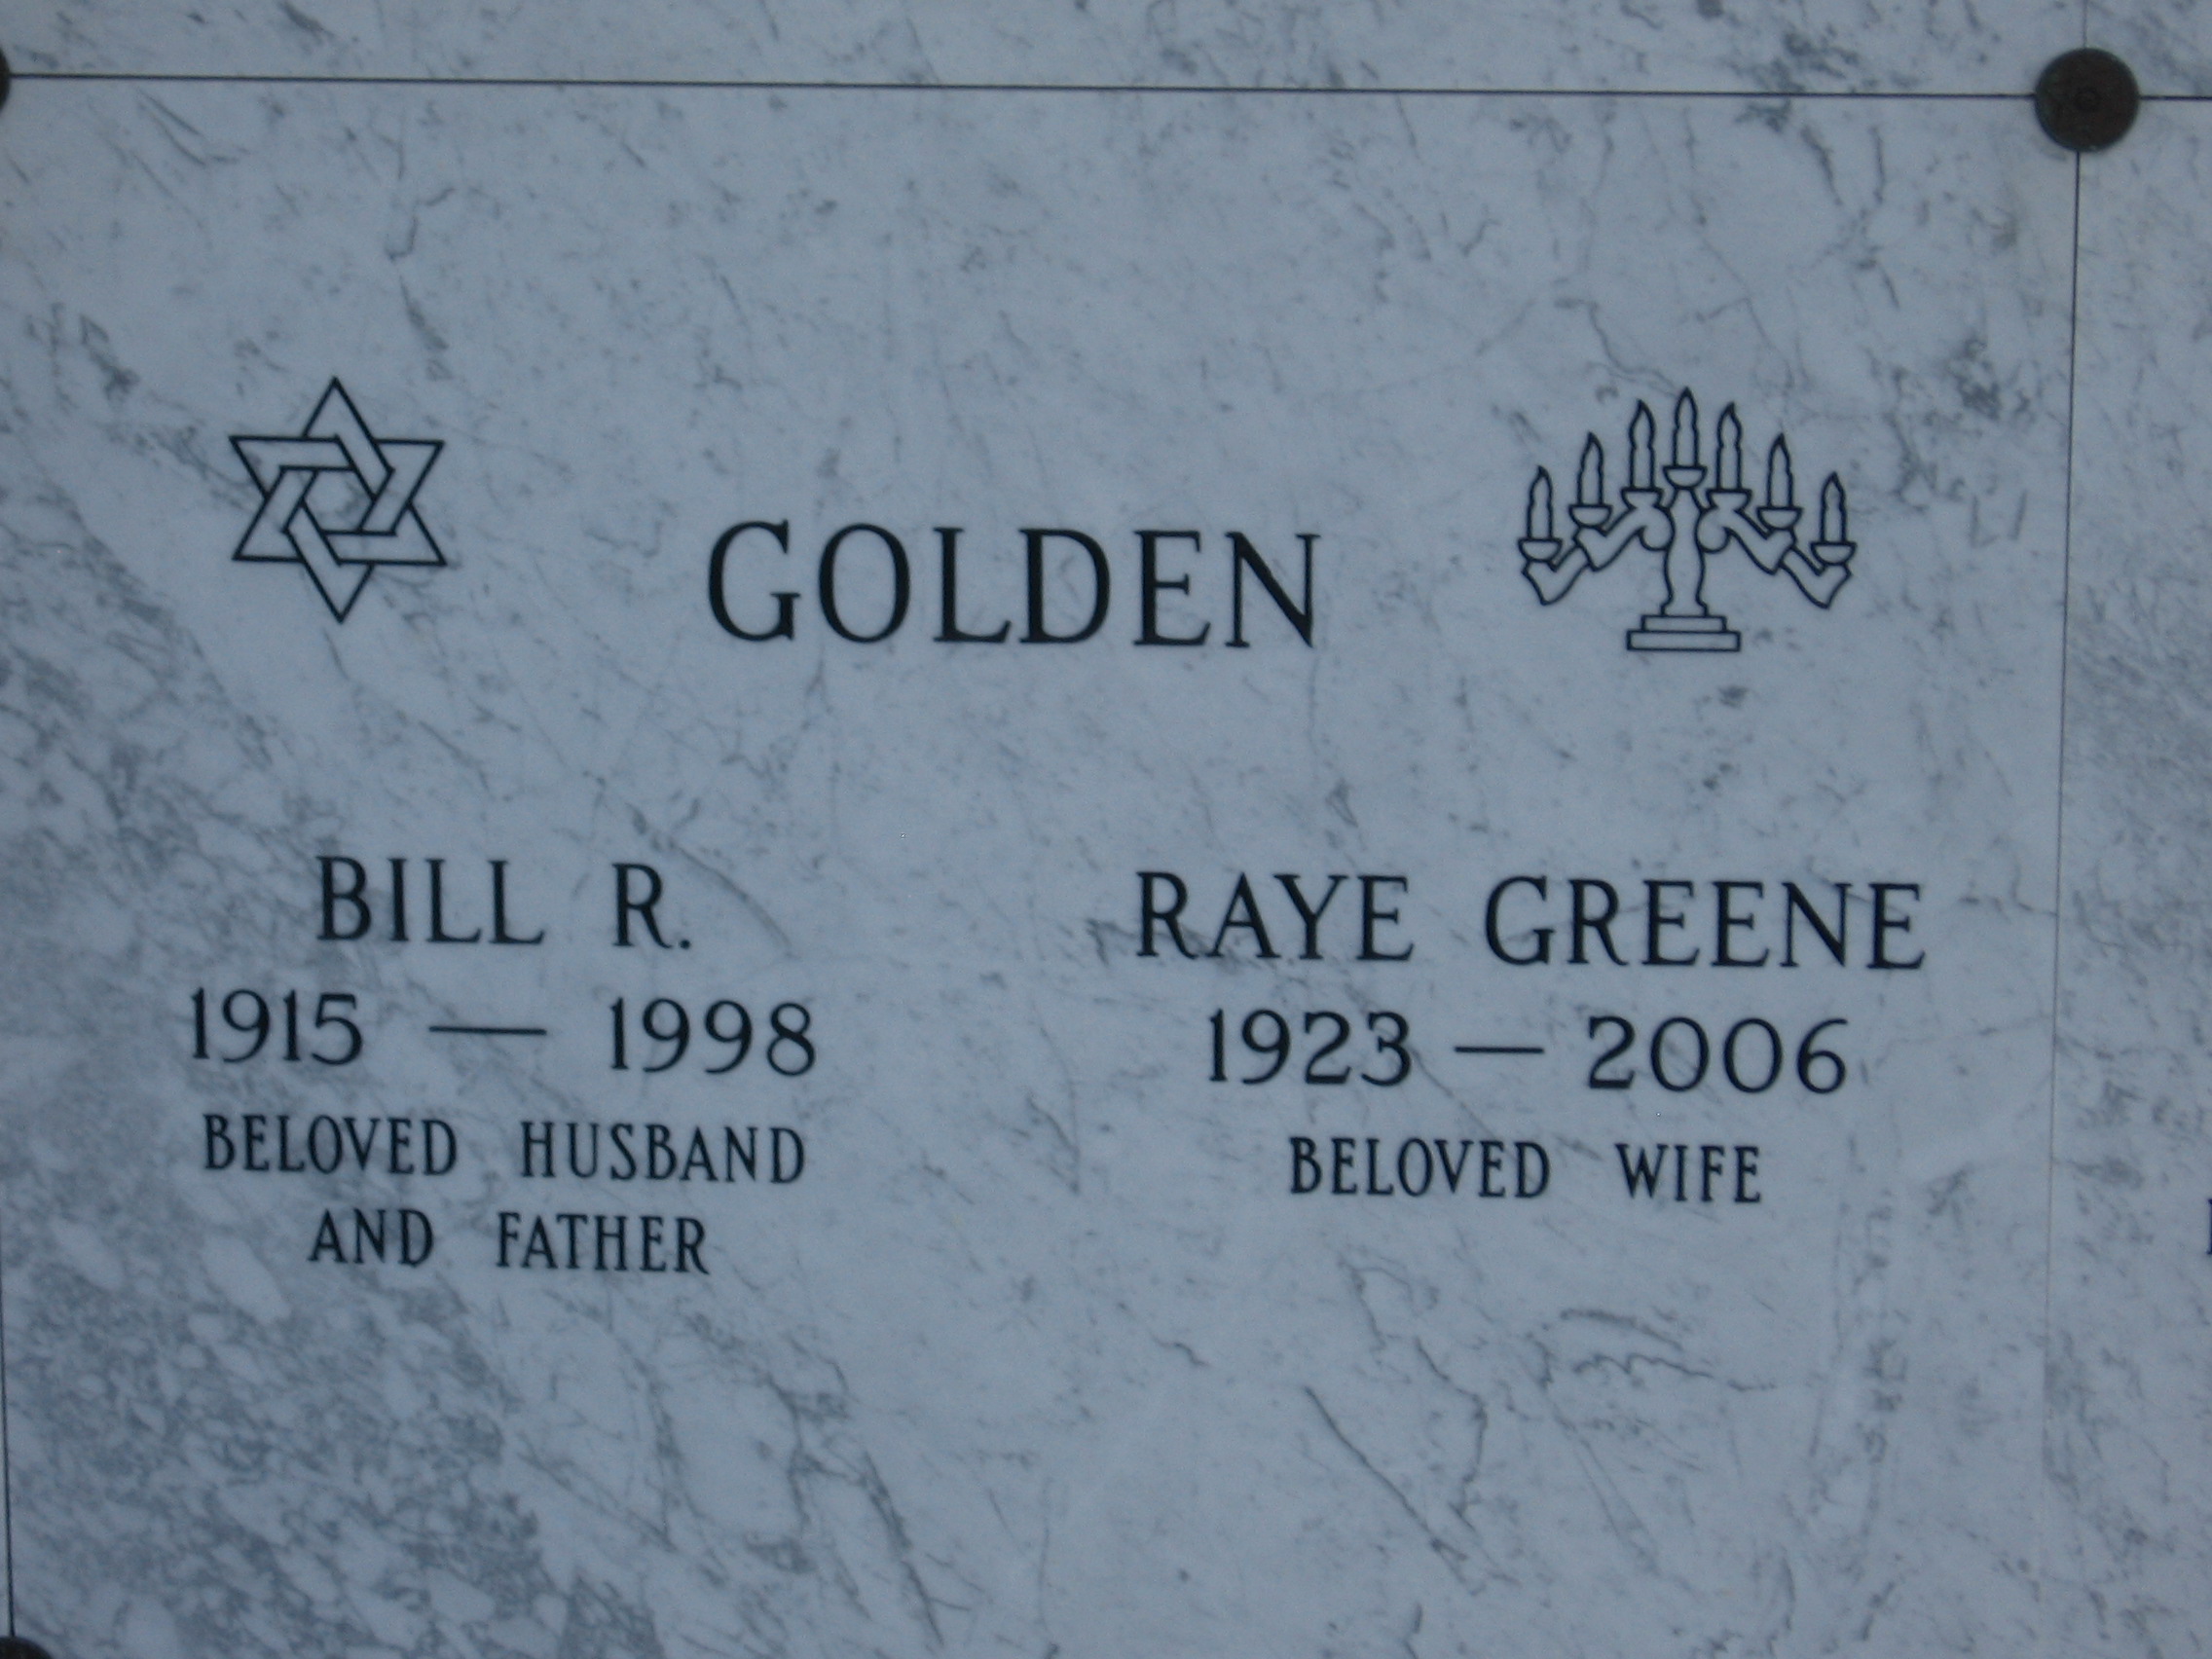 Bill R Golden